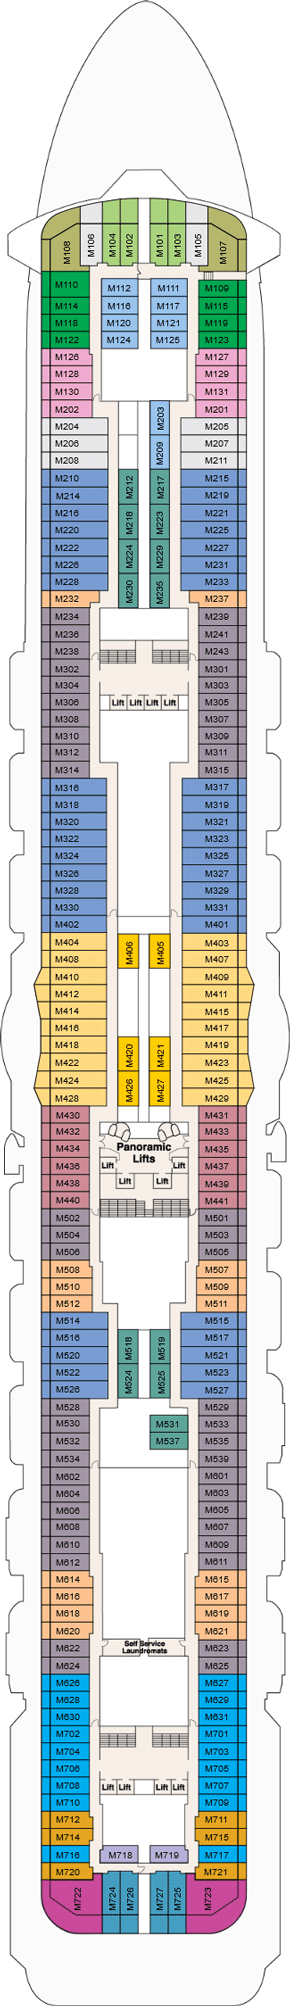 Regal Princess Marina Deck Deck Plan